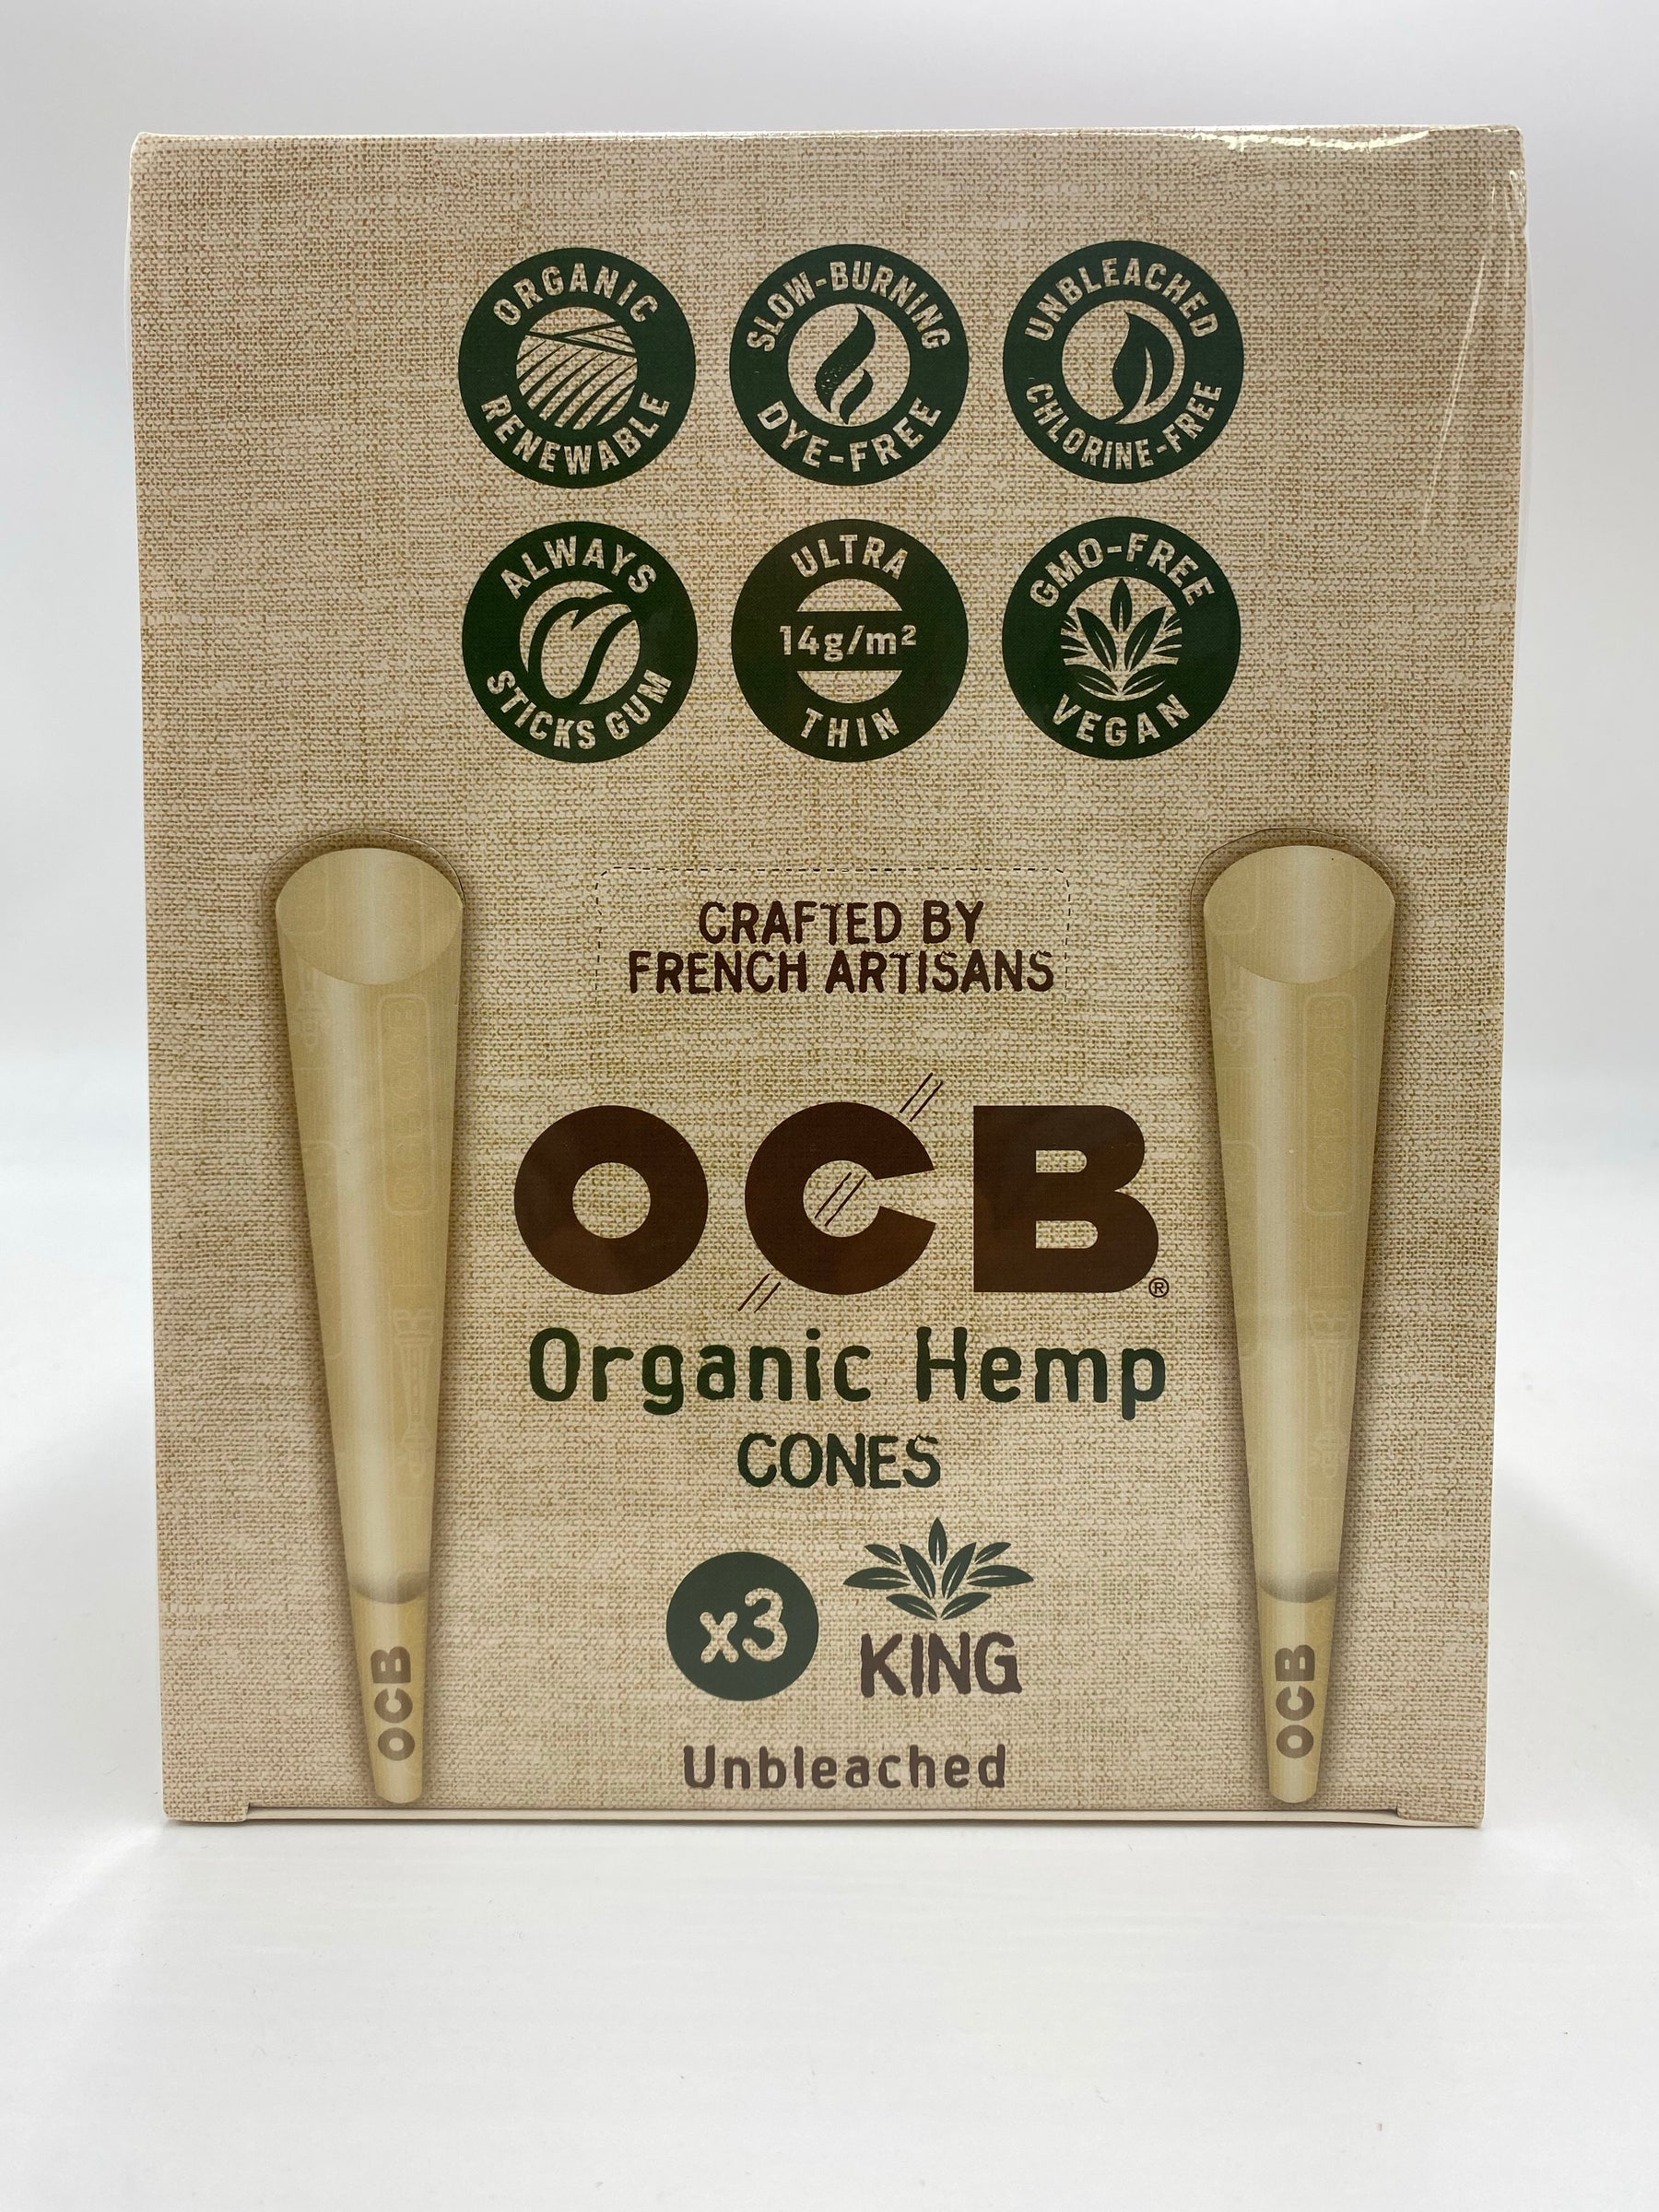 OCB Organic Hemp King Slim + Tips — OCB Rolling Papers